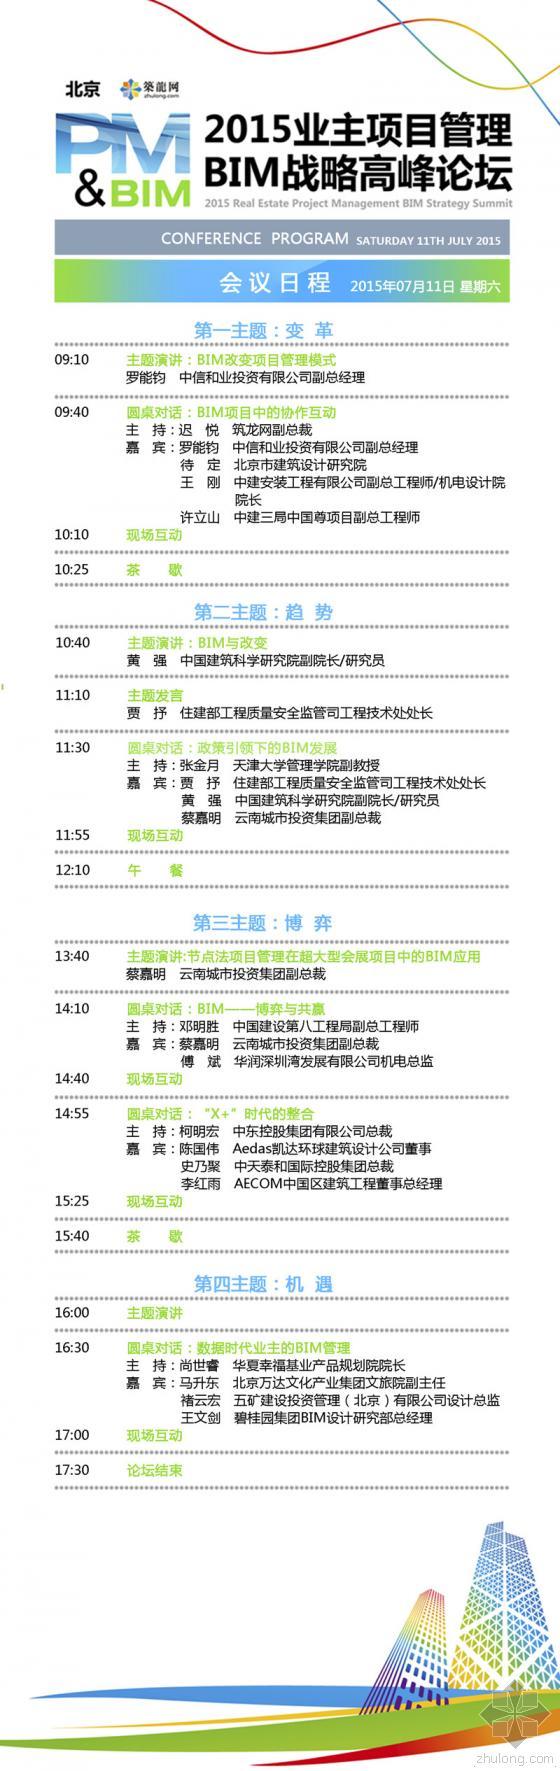 [7.11 北京]知名业主齐聚峰会 共议BIM产业变革-会议日程图new